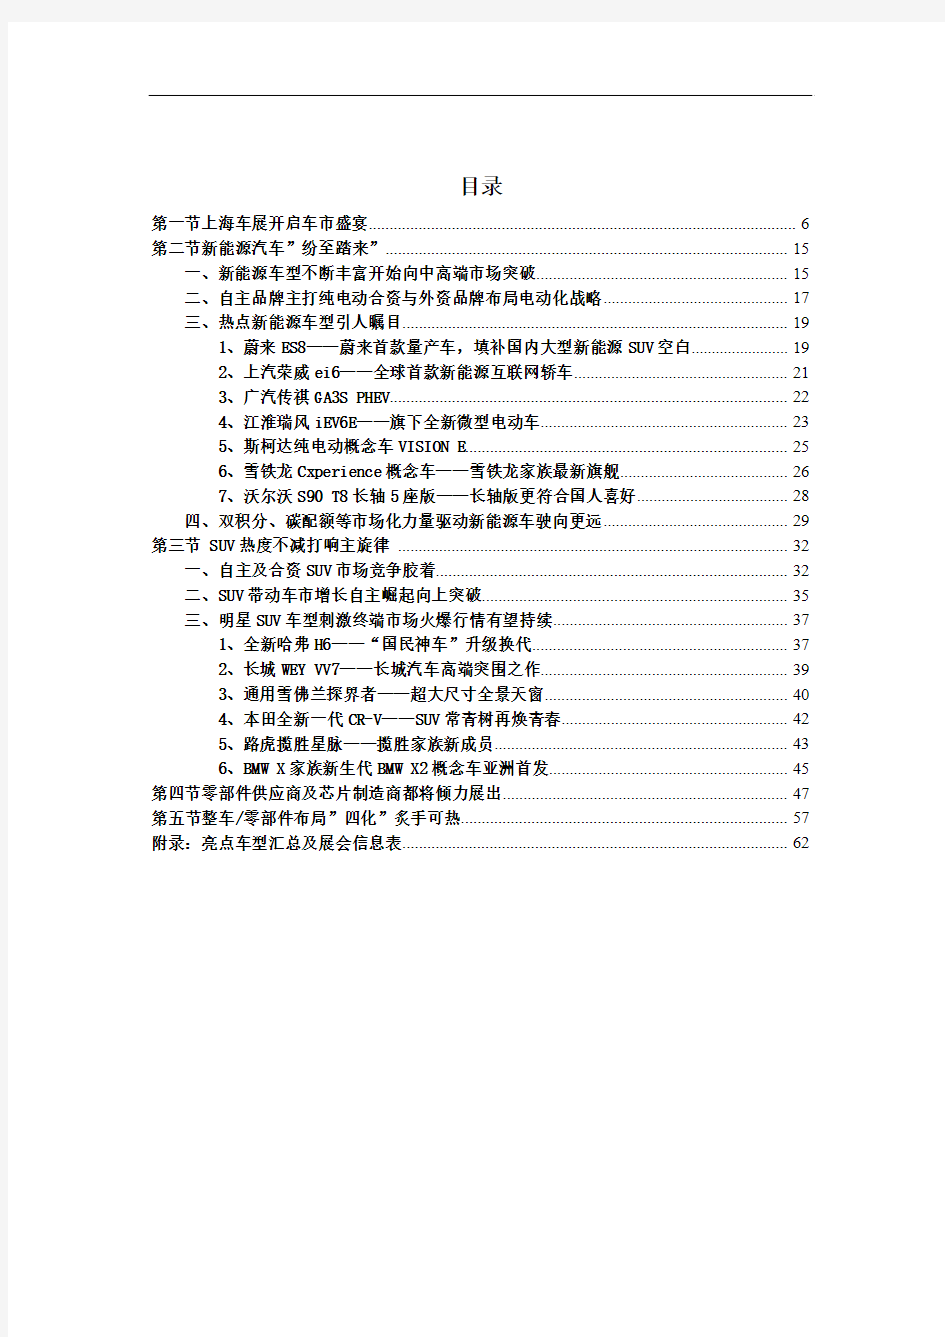 2017年上海车展专题分析报告